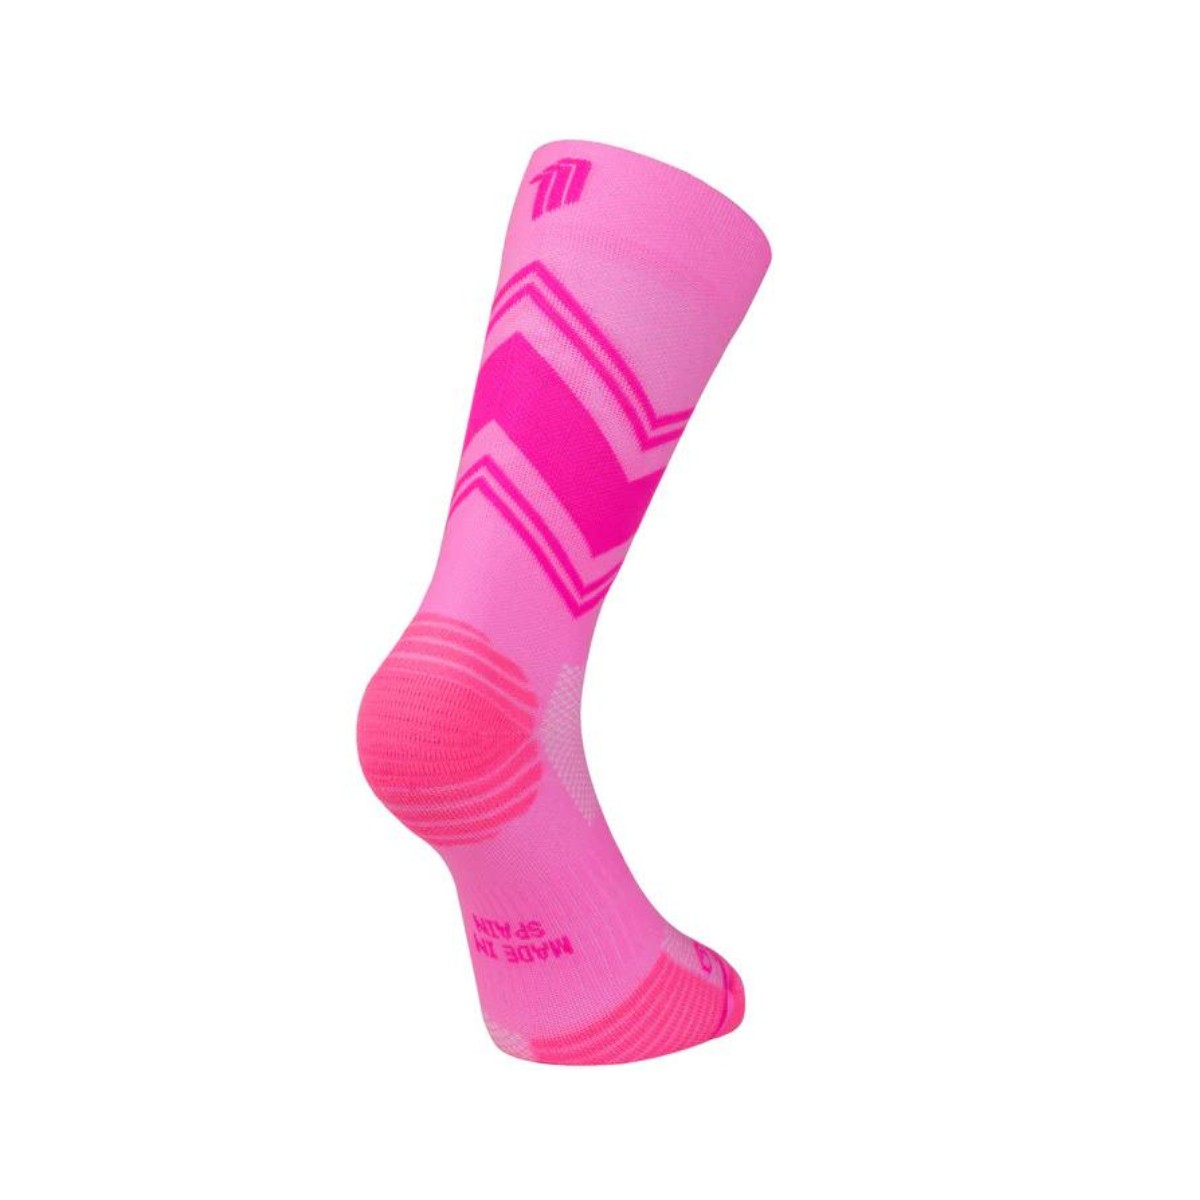 ck hervorragende günstig Kaufen-Sporcks Posh Pink Socken, Größe L. Sporcks Posh Pink Socken, Größe L <![CDATA[Sporcks Posh Pink Socken Verbessern Sie Ihr Lauferlebnis mit den Sporcks Posh Pink Socken, die für hervorragenden Halt und Komfort bei jedem Schritt sorgen.